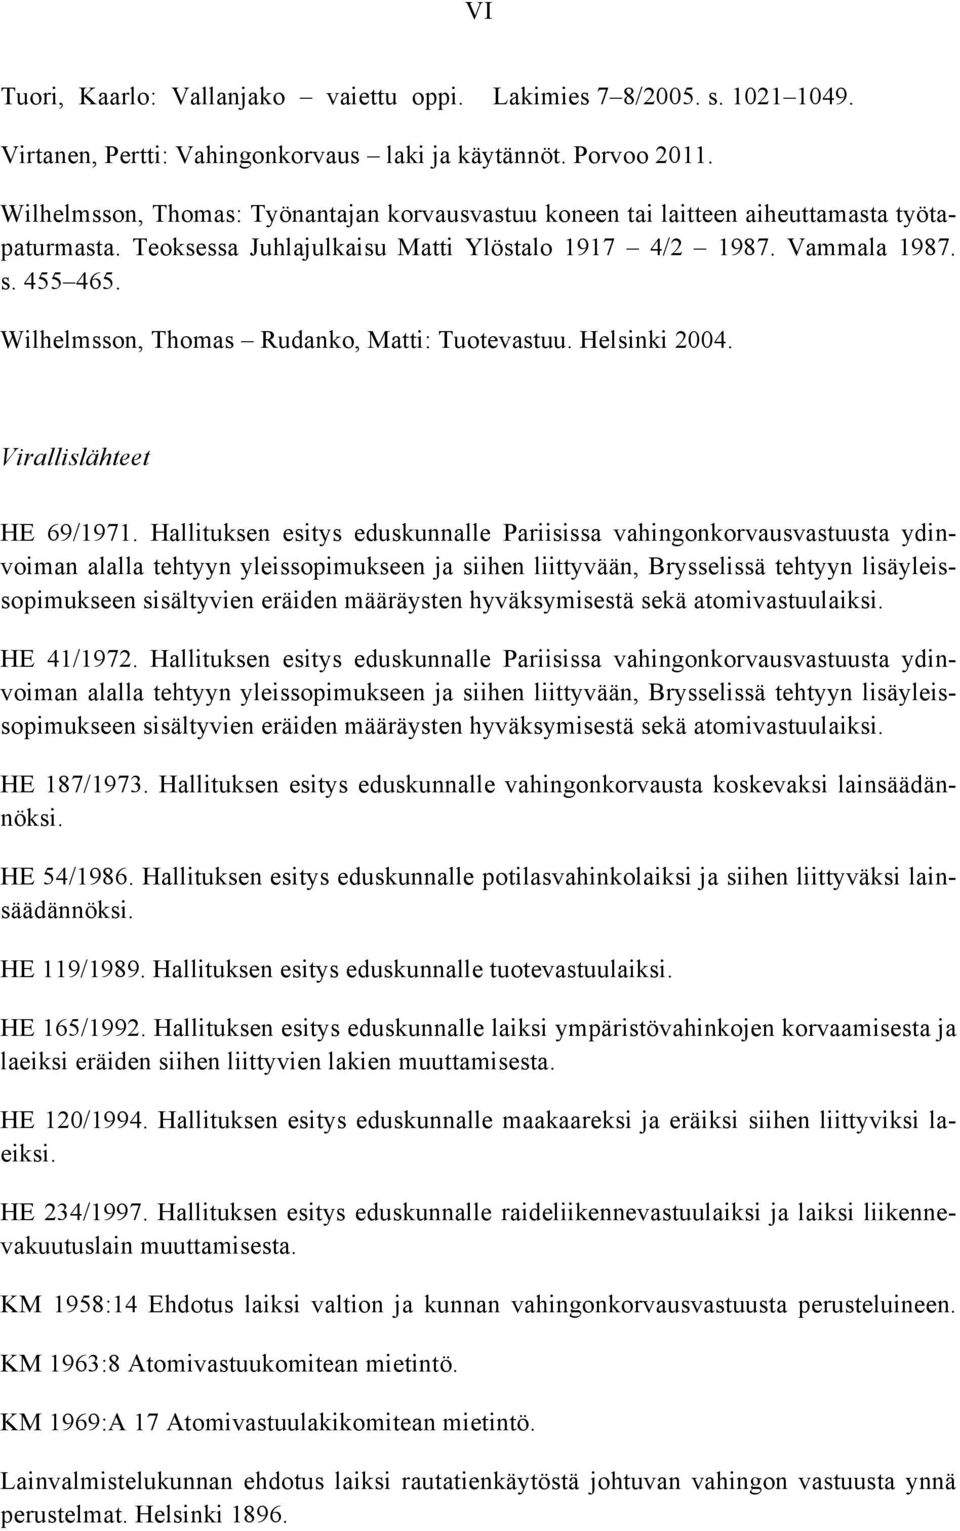 Wilhelmsson, Thomas Rudanko, Matti: Tuotevastuu. Helsinki 2004. Virallislähteet HE 69/1971.